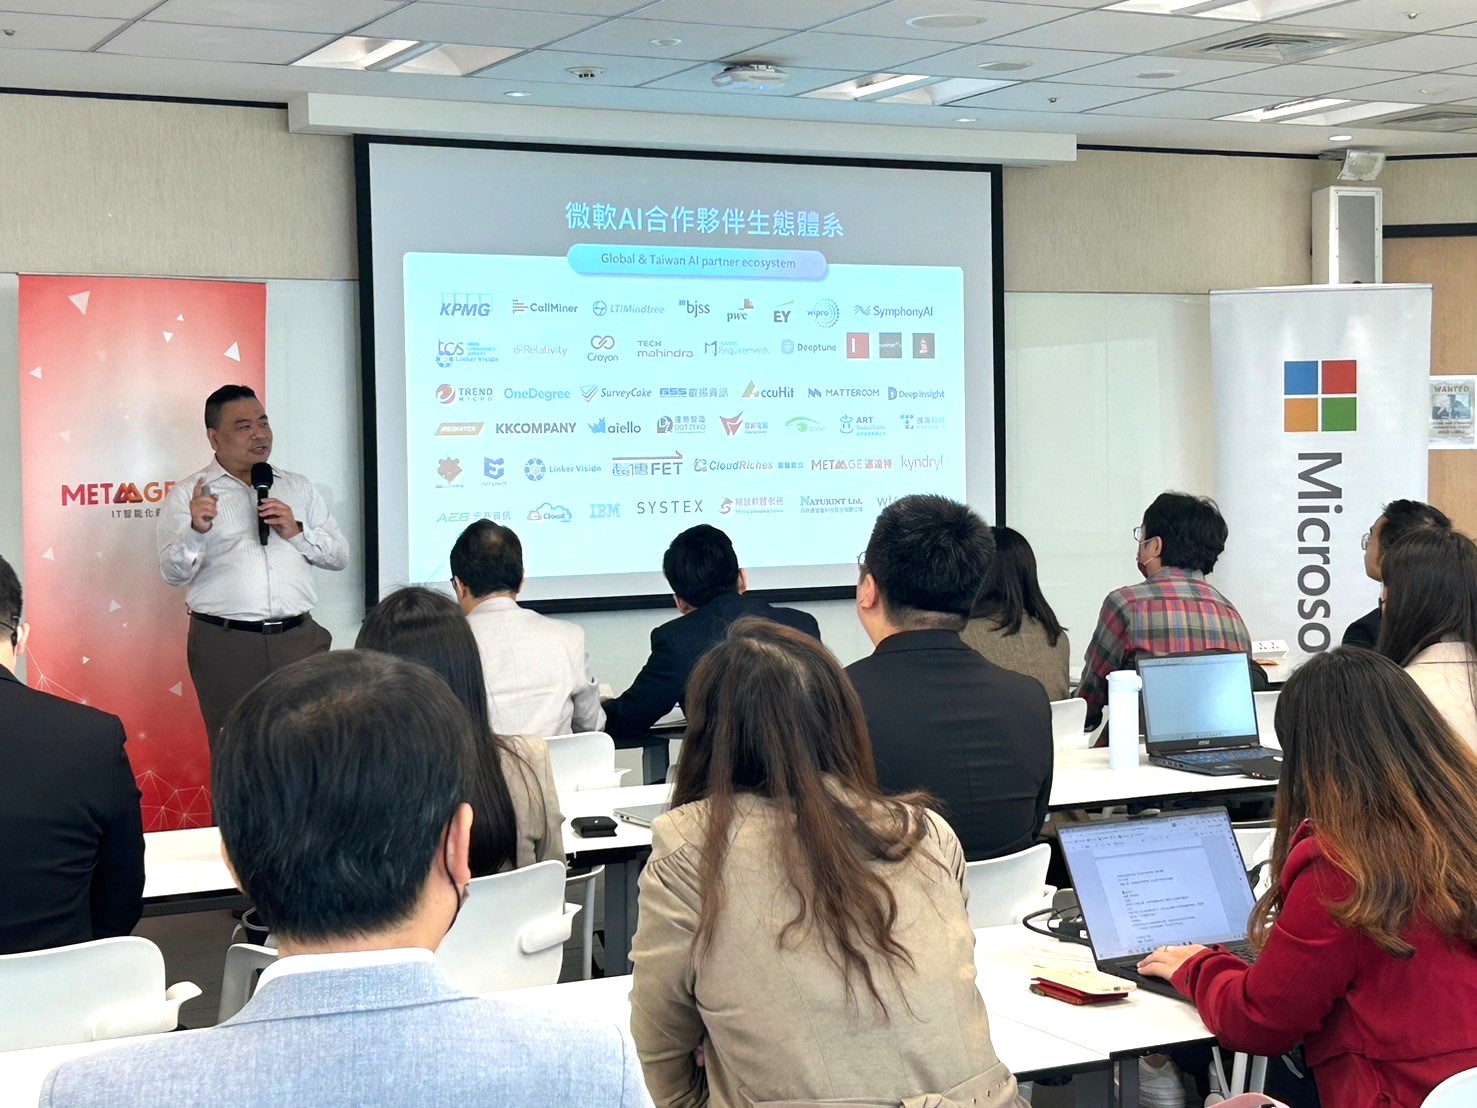 台灣微軟全球合作夥伴解決方案事業群技術副總經理 梁仲銘 分享微軟合作夥伴生態系